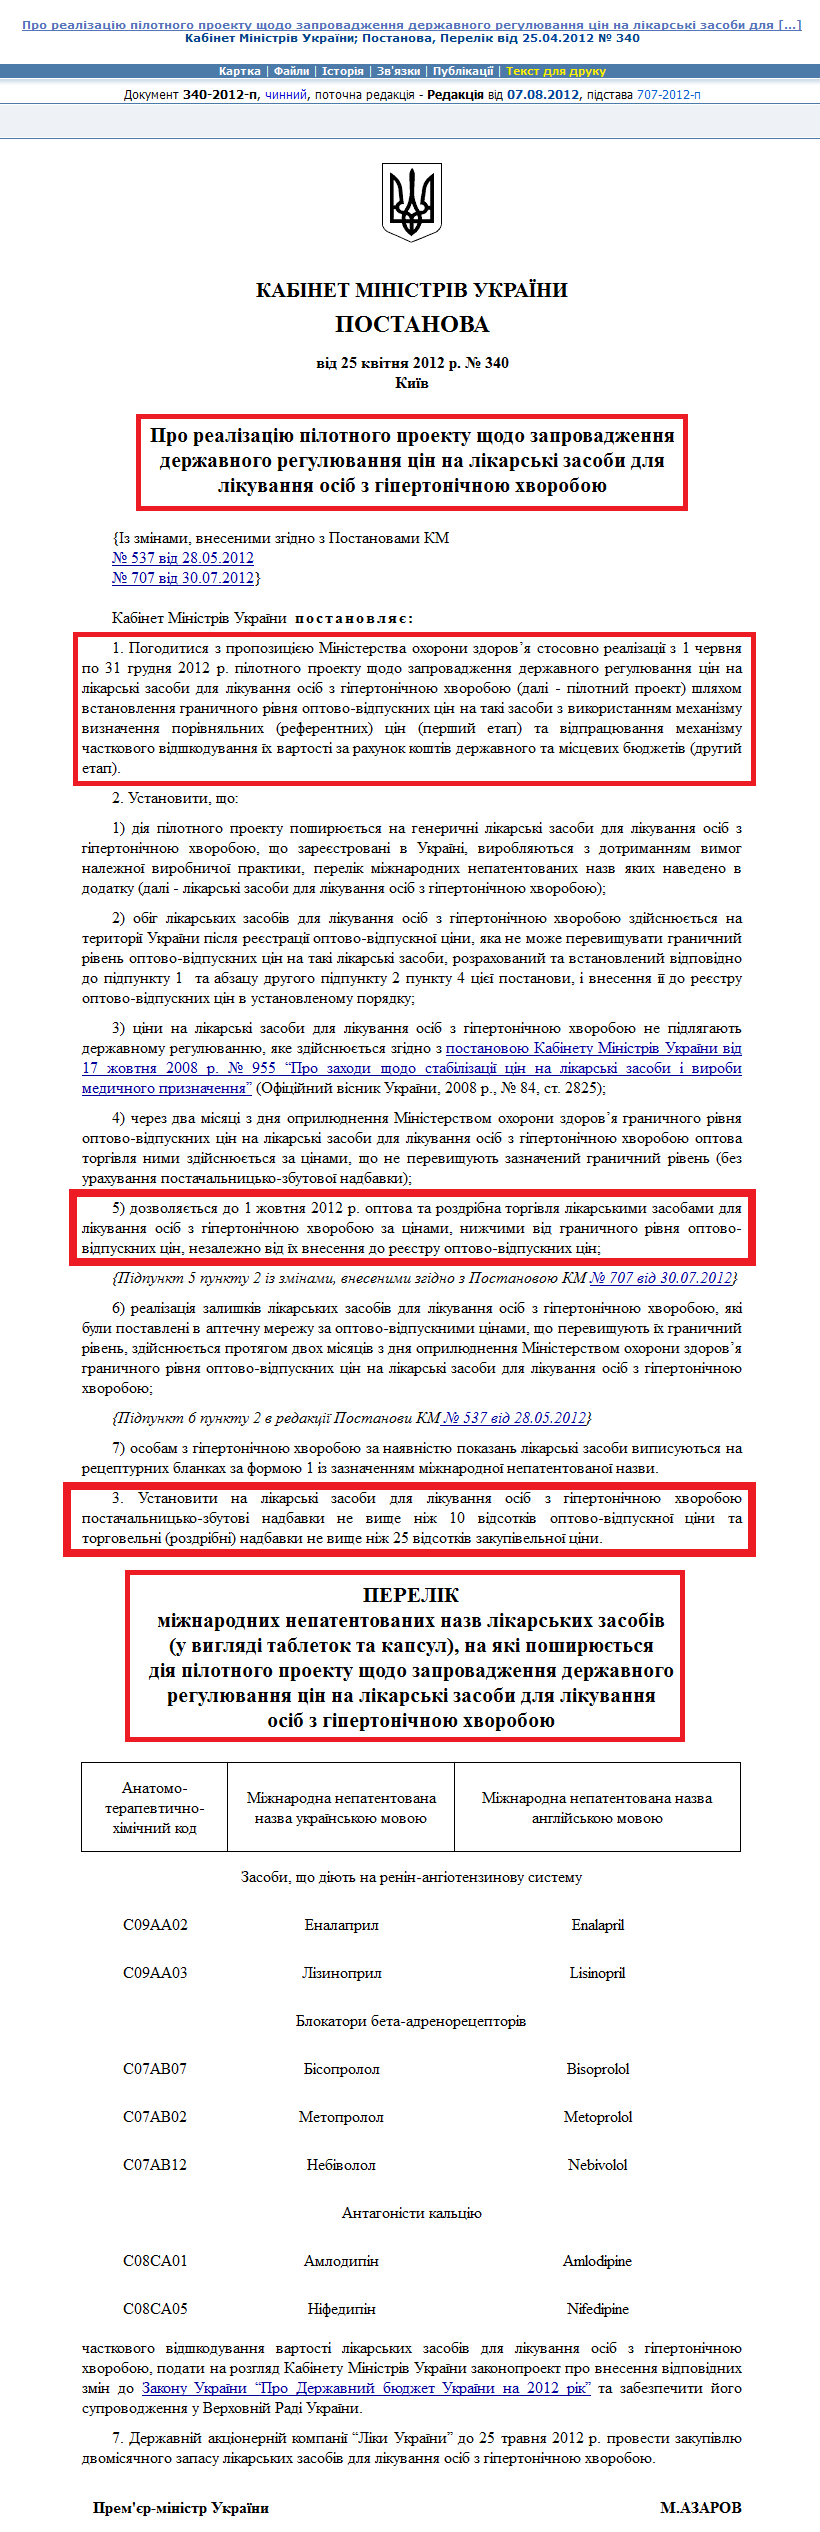 http://zakon2.rada.gov.ua/laws/show/340-2012-%D0%BF